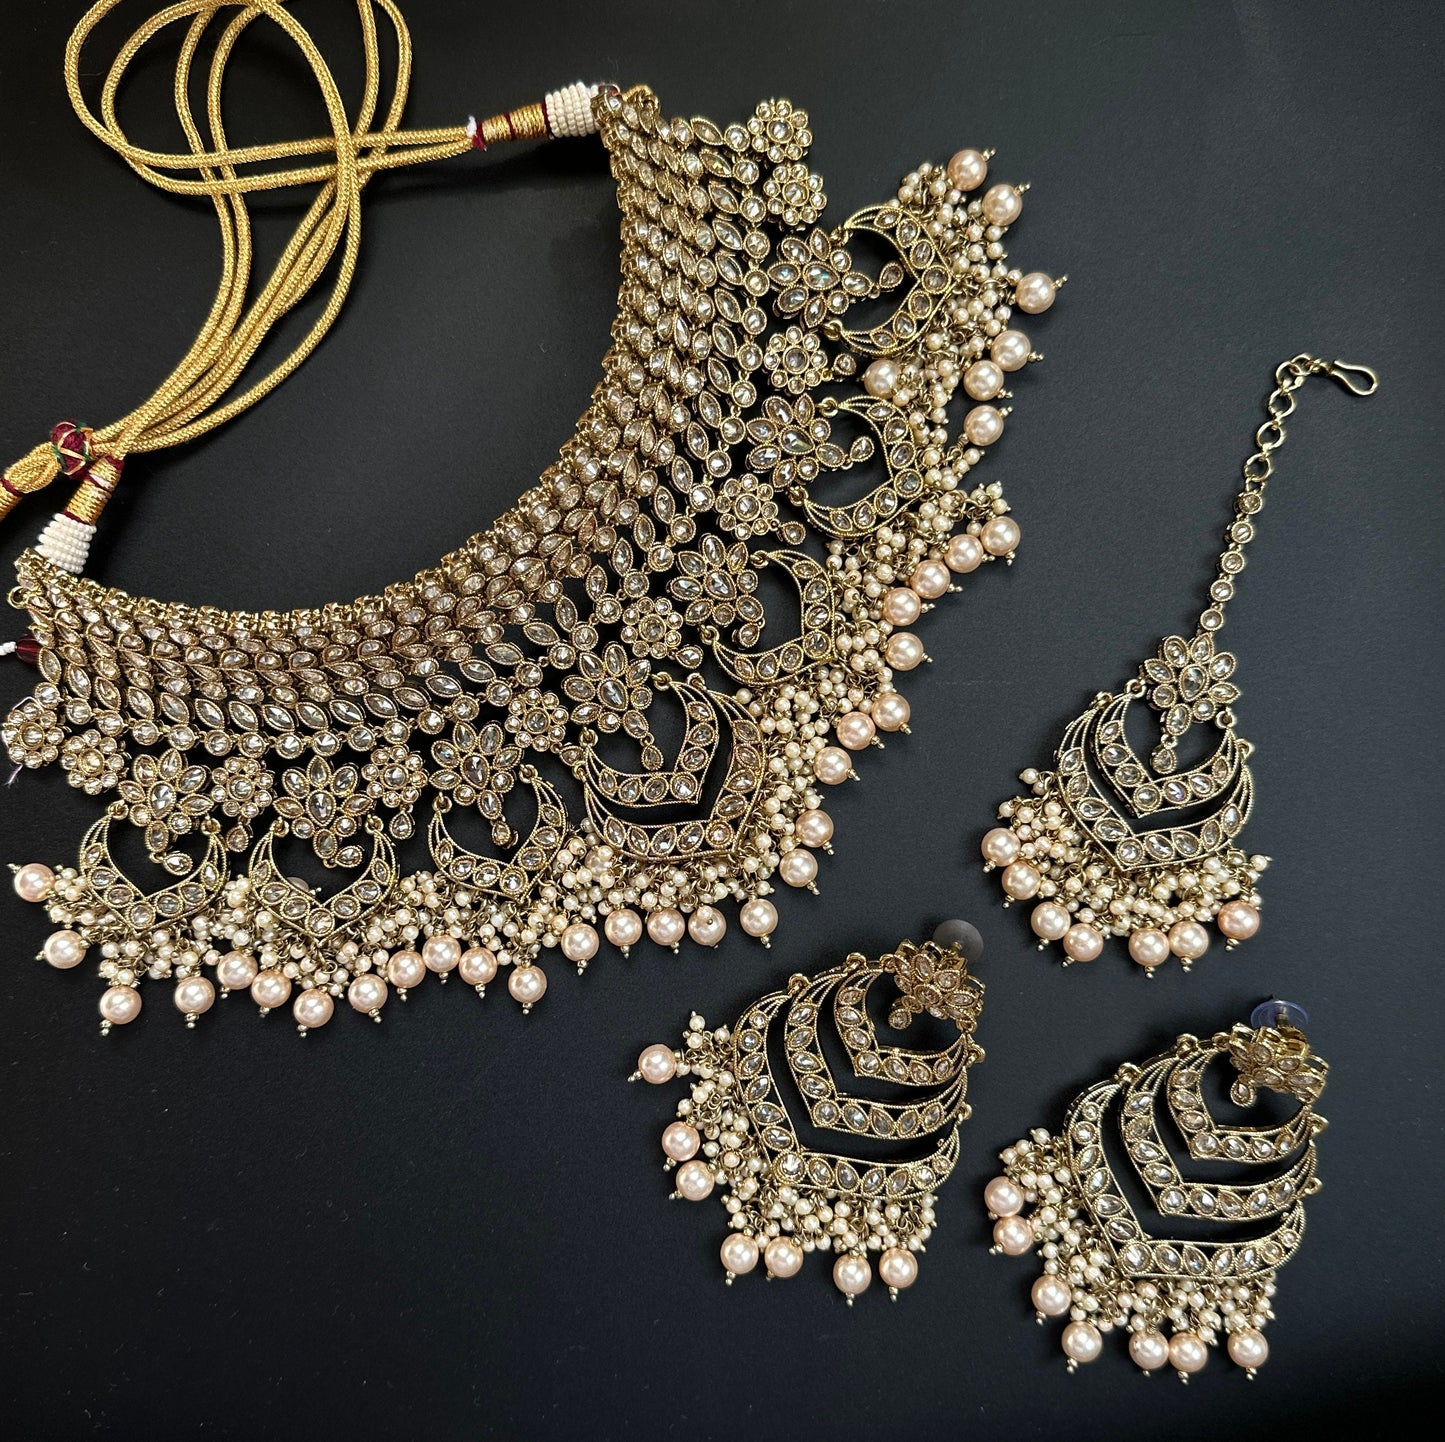 Indian Bridal wedding Kundan Necklace/Pakistani necklace with tikka/Punjabi bridal choker with jhumka/Antique gold Necklace pearls jhumka